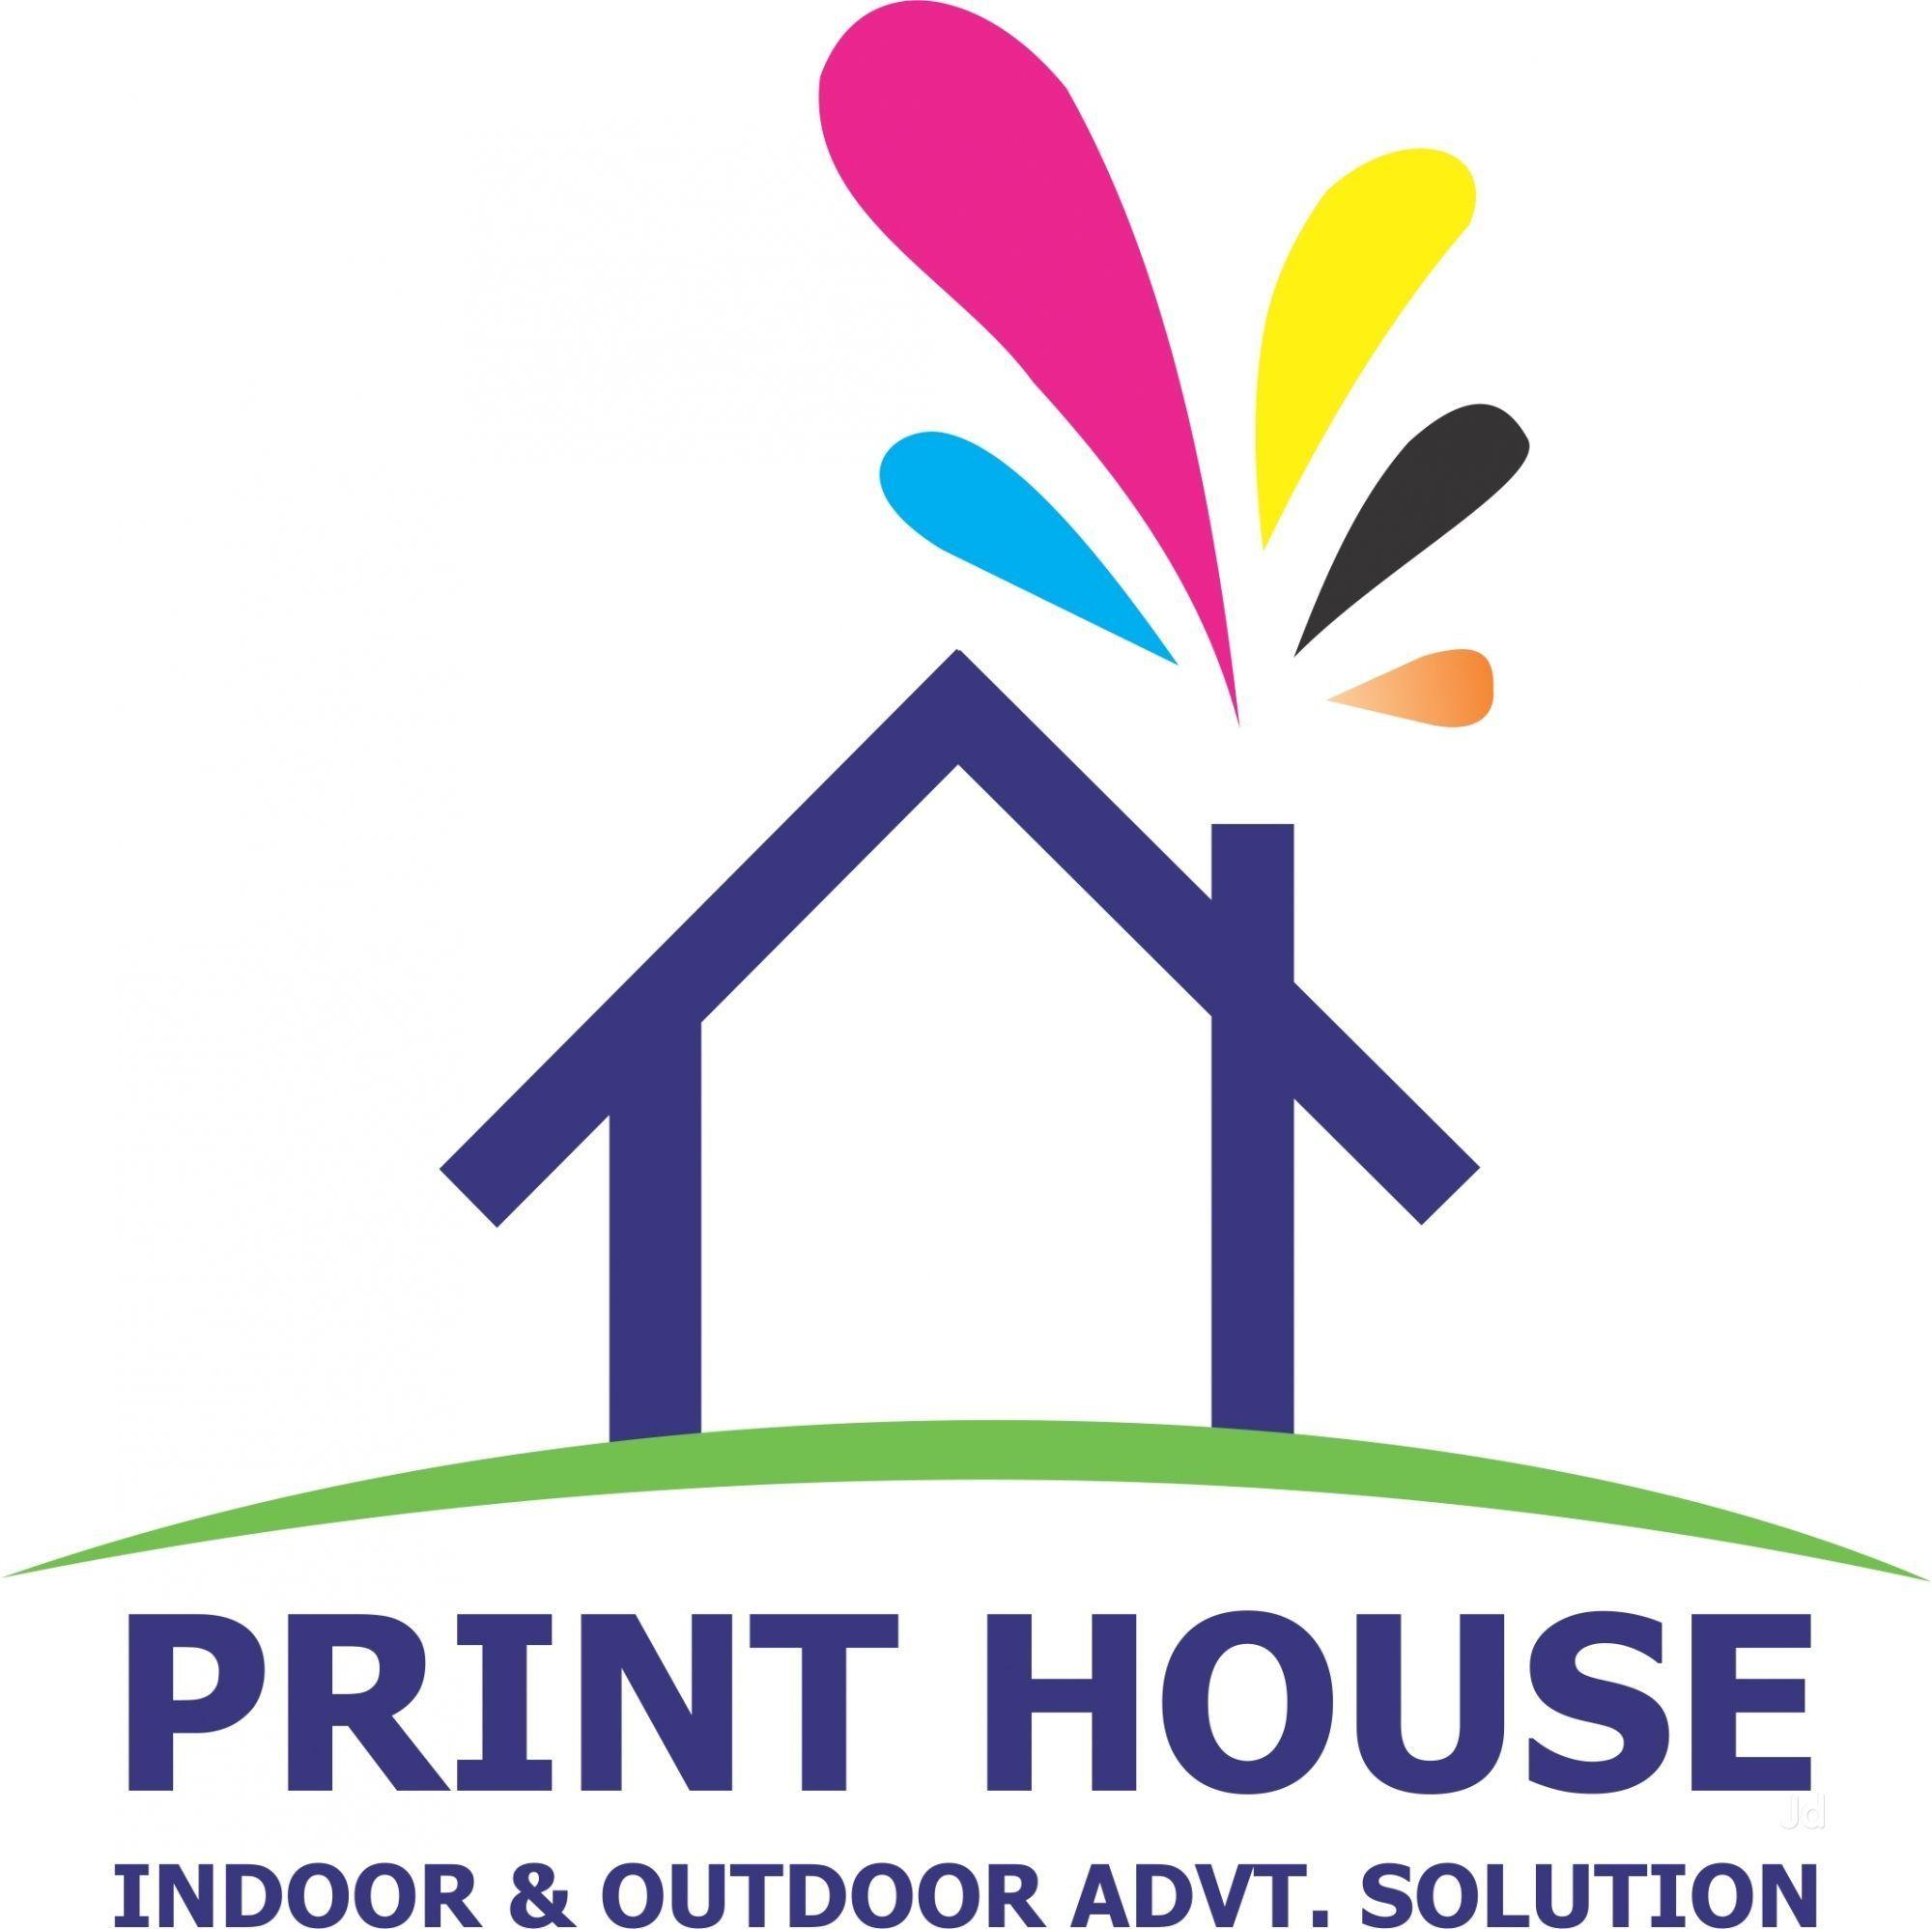 Printing House Logo - Print House Photos, Vaishali Nagar, Jaipur- Pictures & Images ...